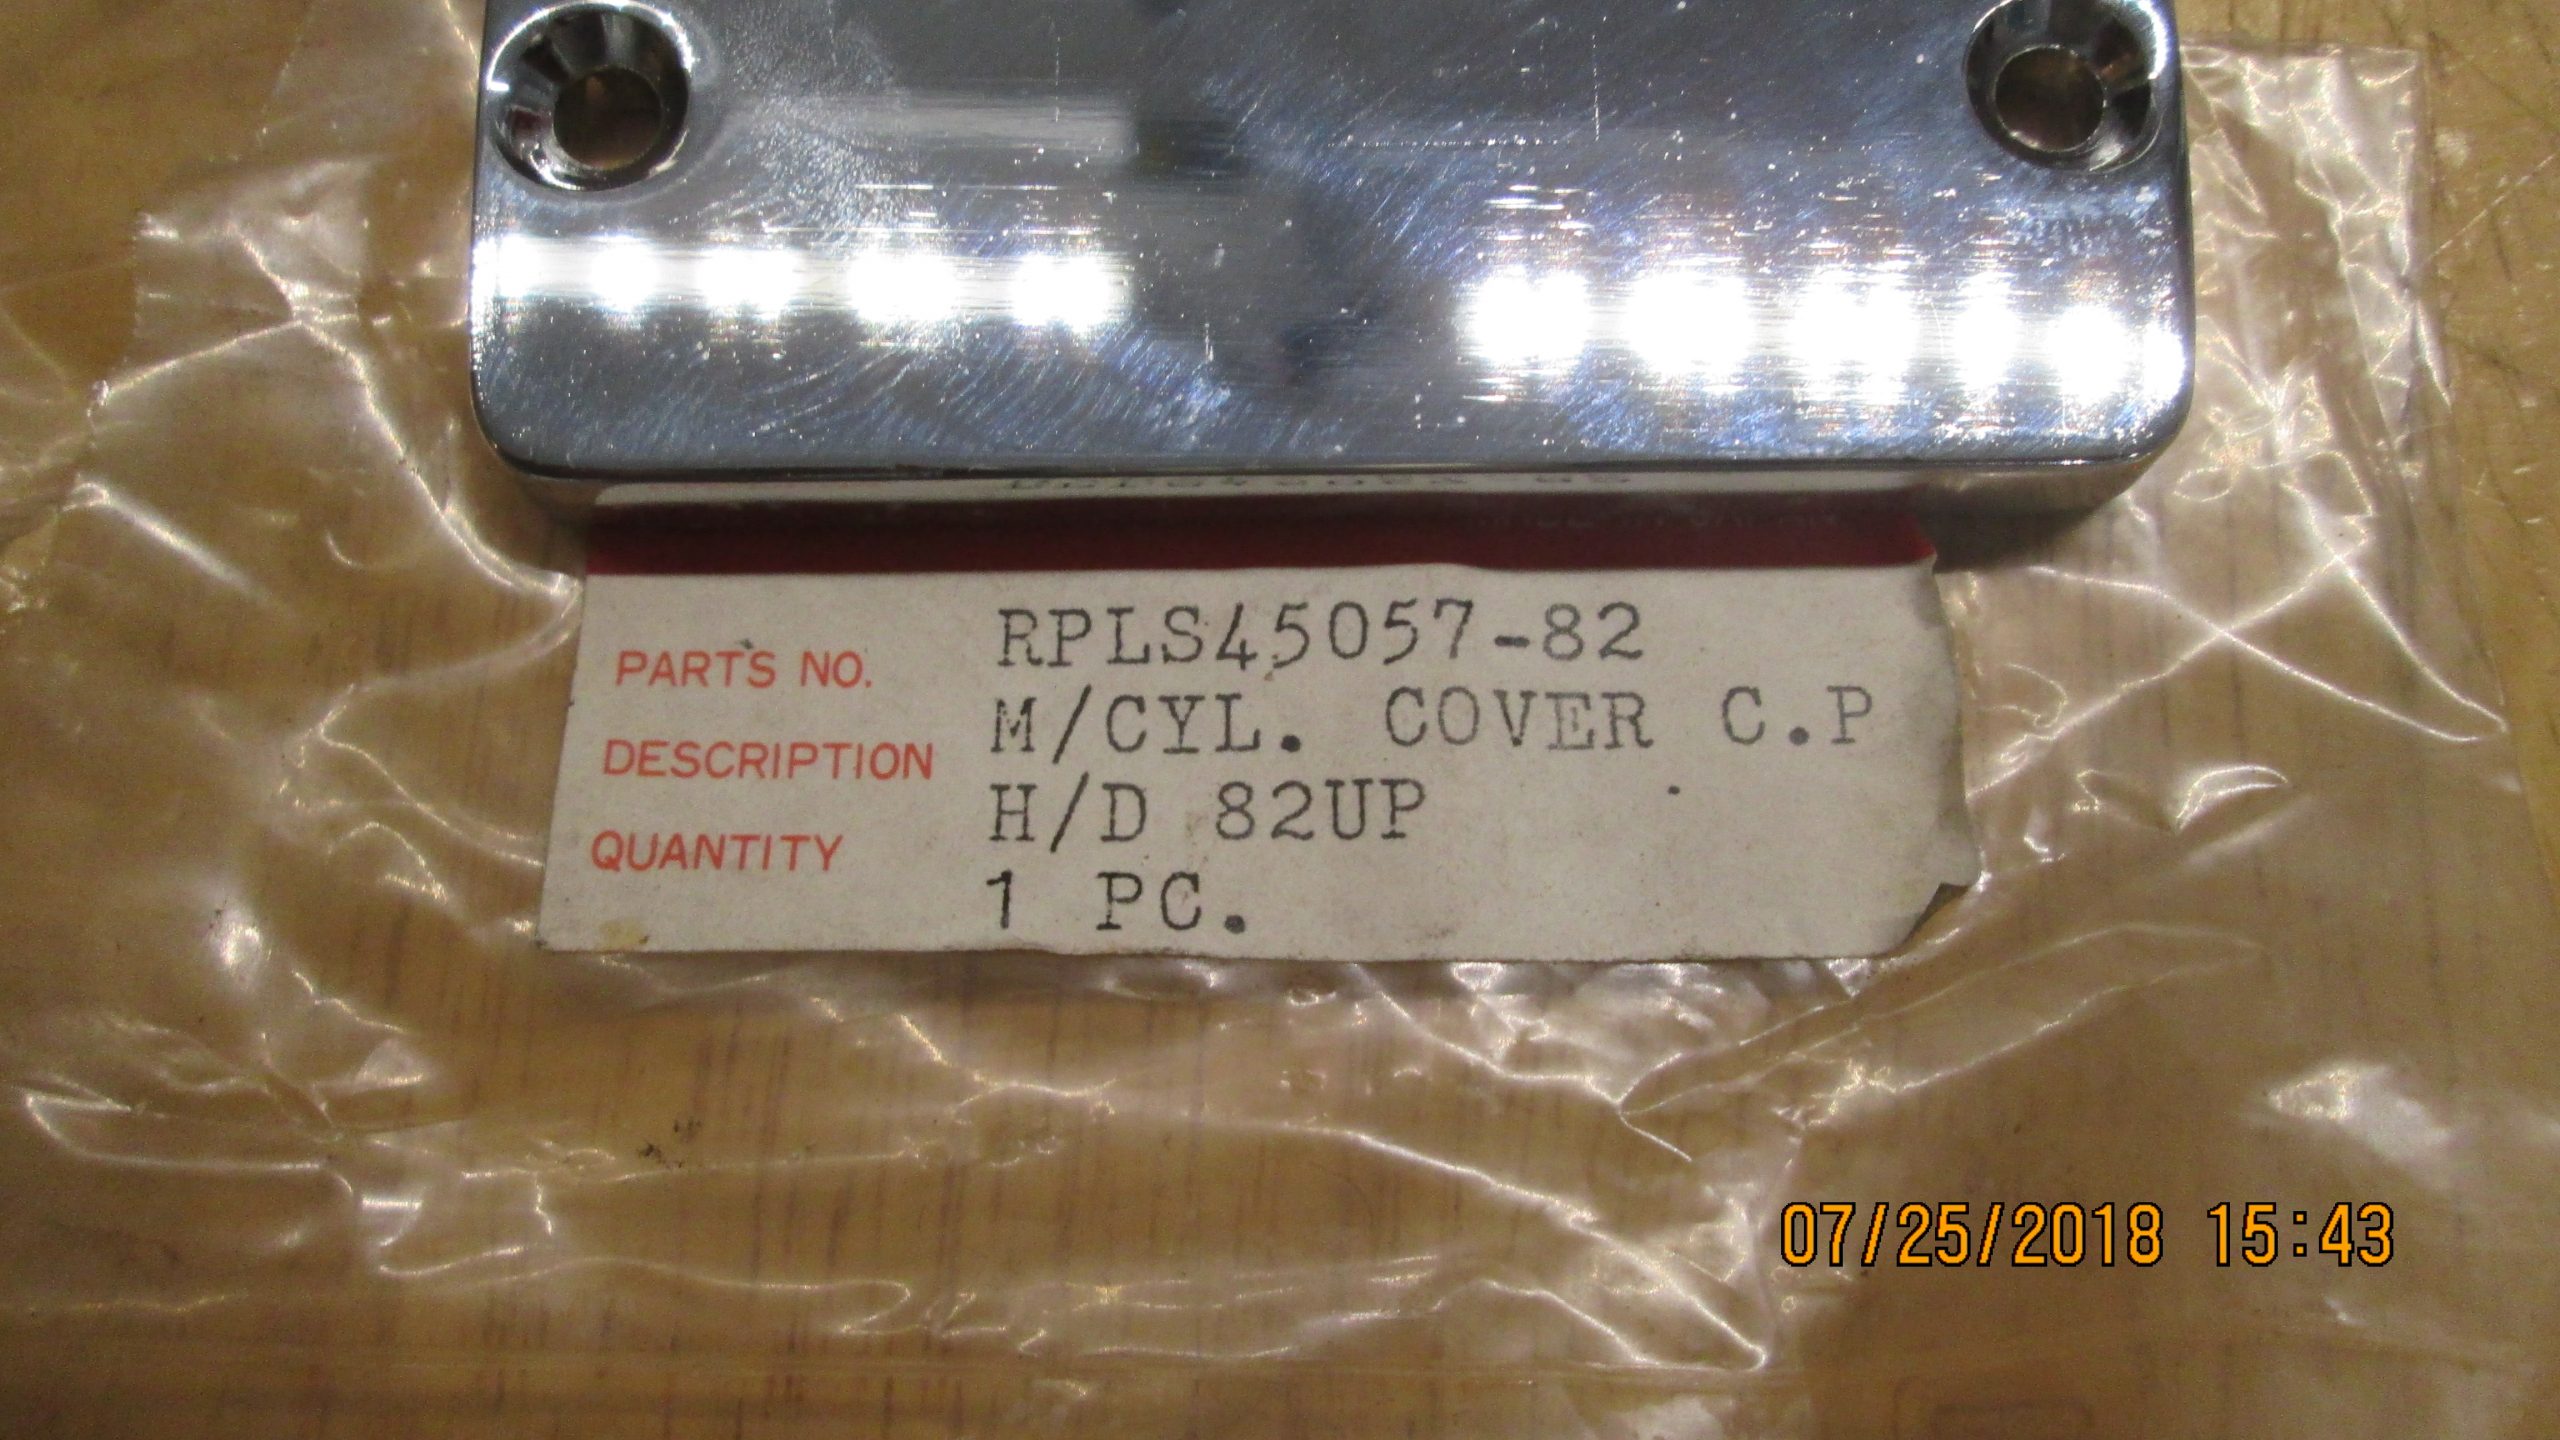 45057-82 Chrome Master Cylinder Reservoir Cap top Harley Davidson 82-85 